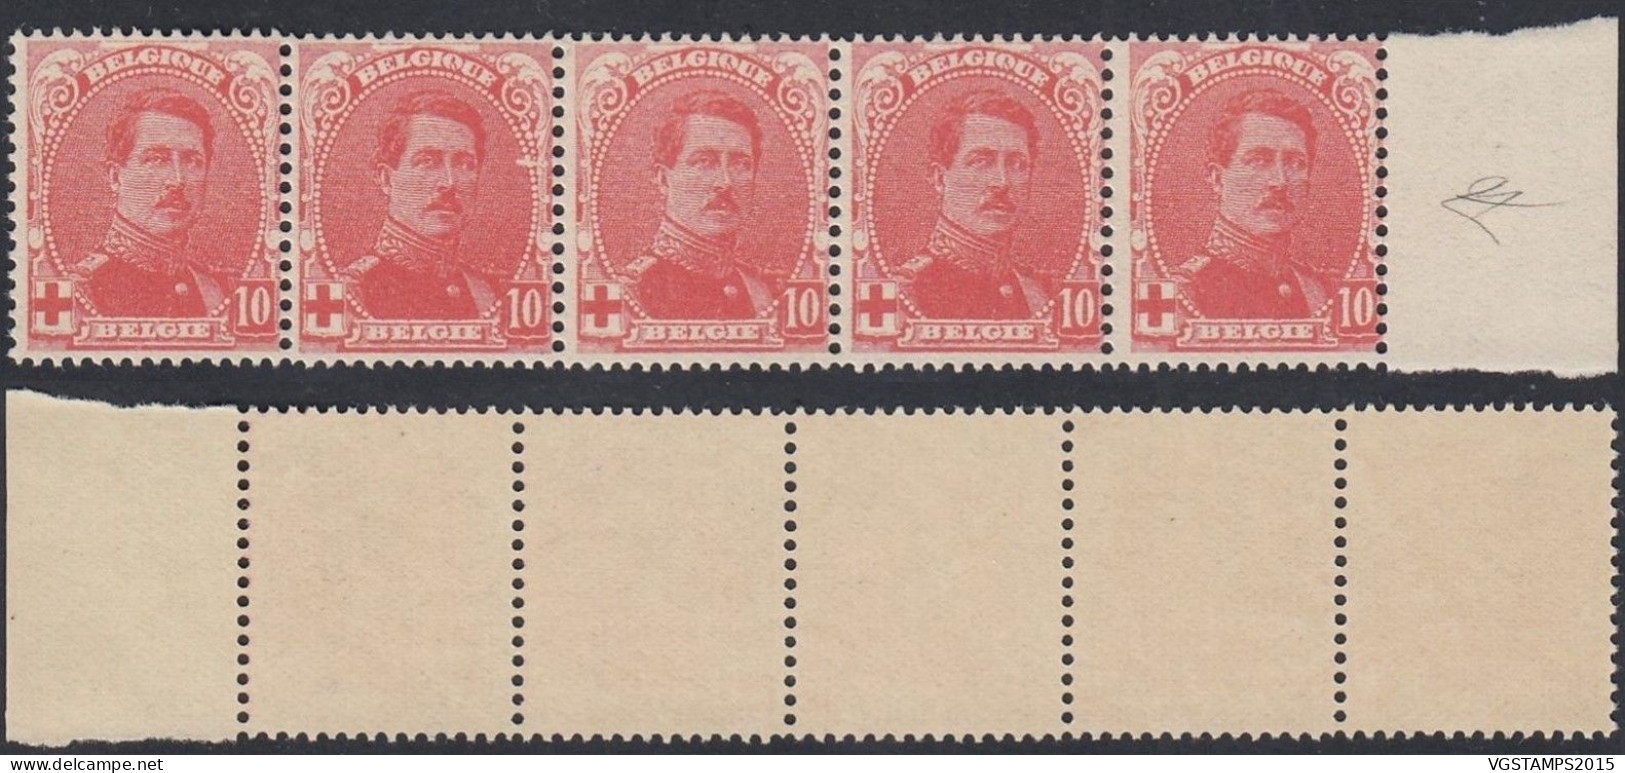 Belgique 1914 - Timbres Neufs. Nr.: 130 V. Bande De 5 Timbres................ (EB) AR-02046 - 1914-1915 Rotes Kreuz